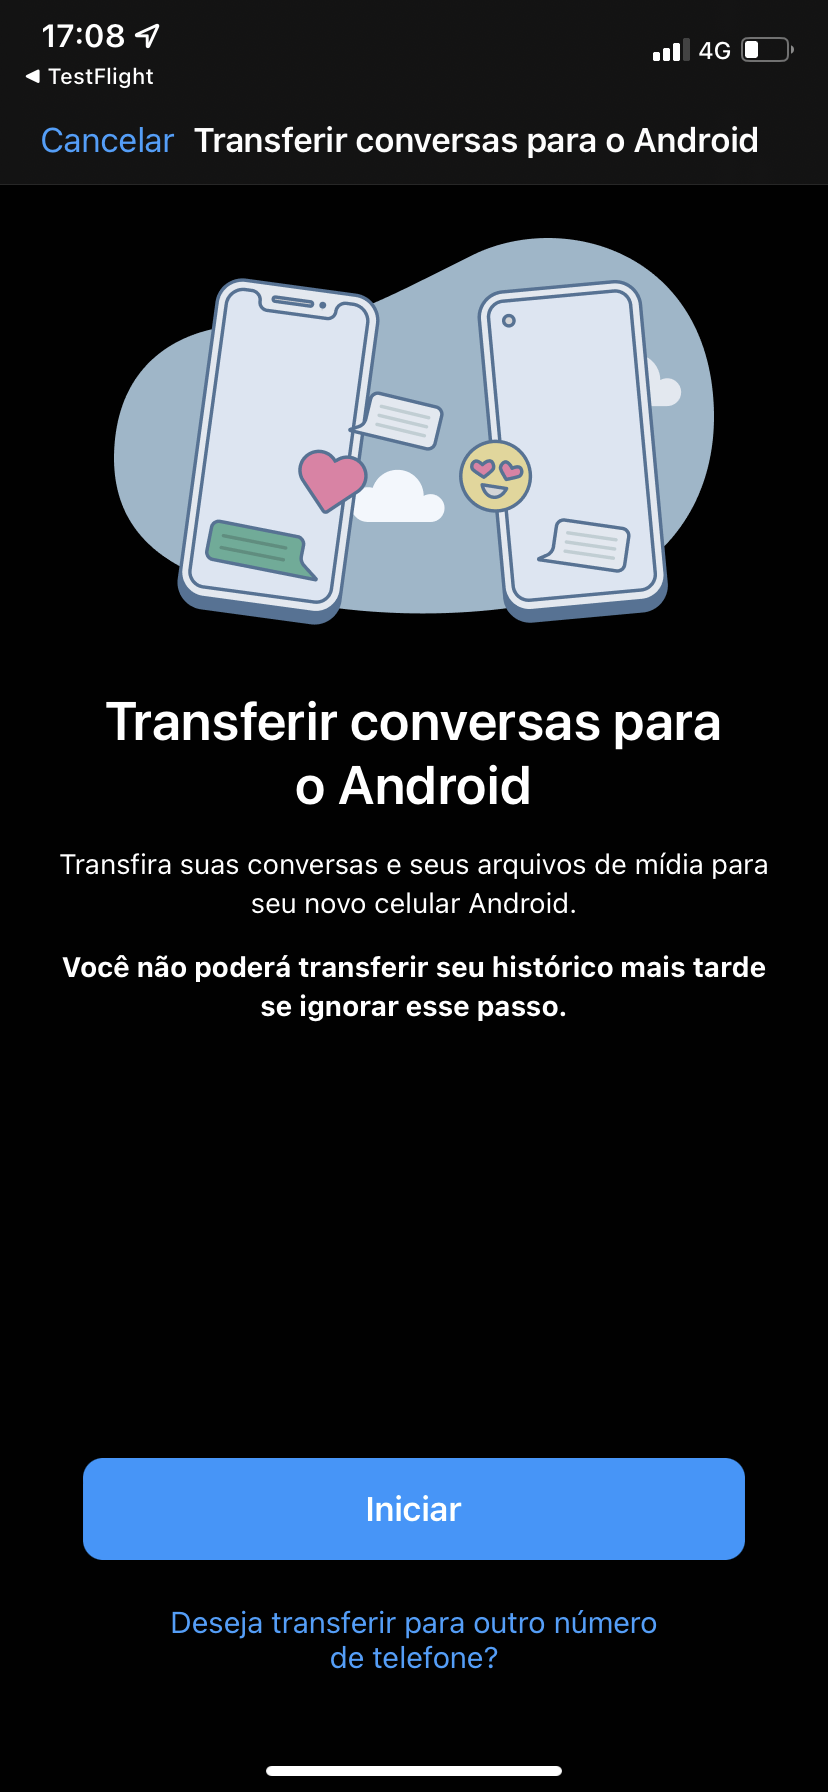 WhatsApp: transferencia de chat de Android lanzada en iOS